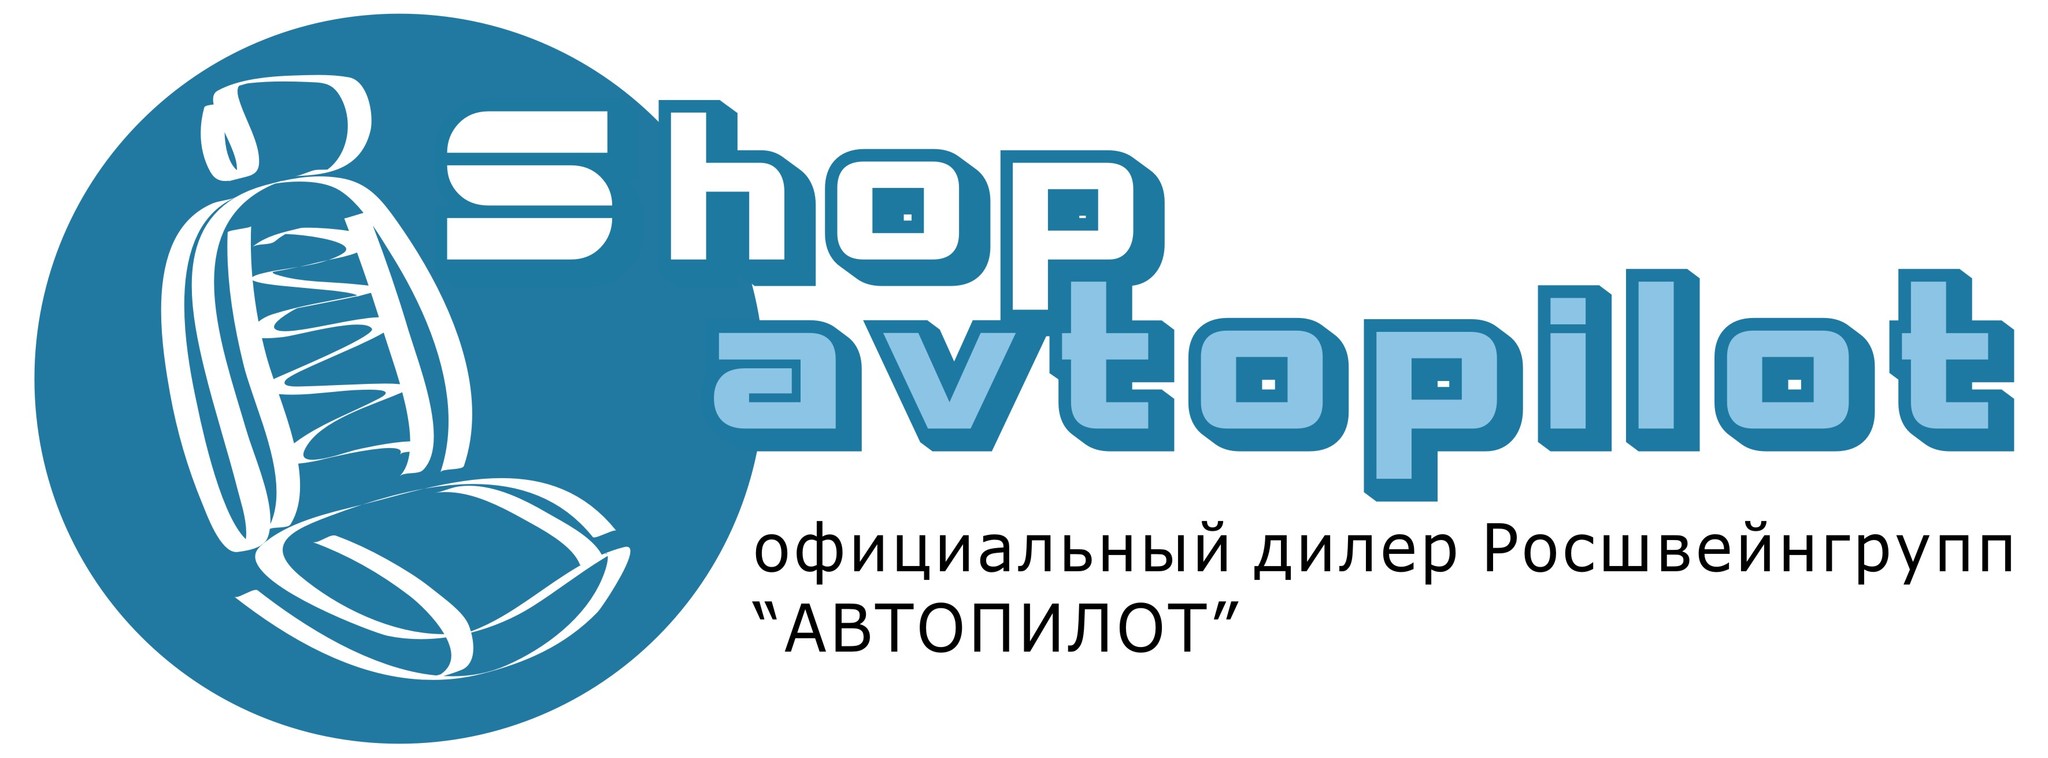 Встречайте! Новый сайт shop-avtopilot.ru